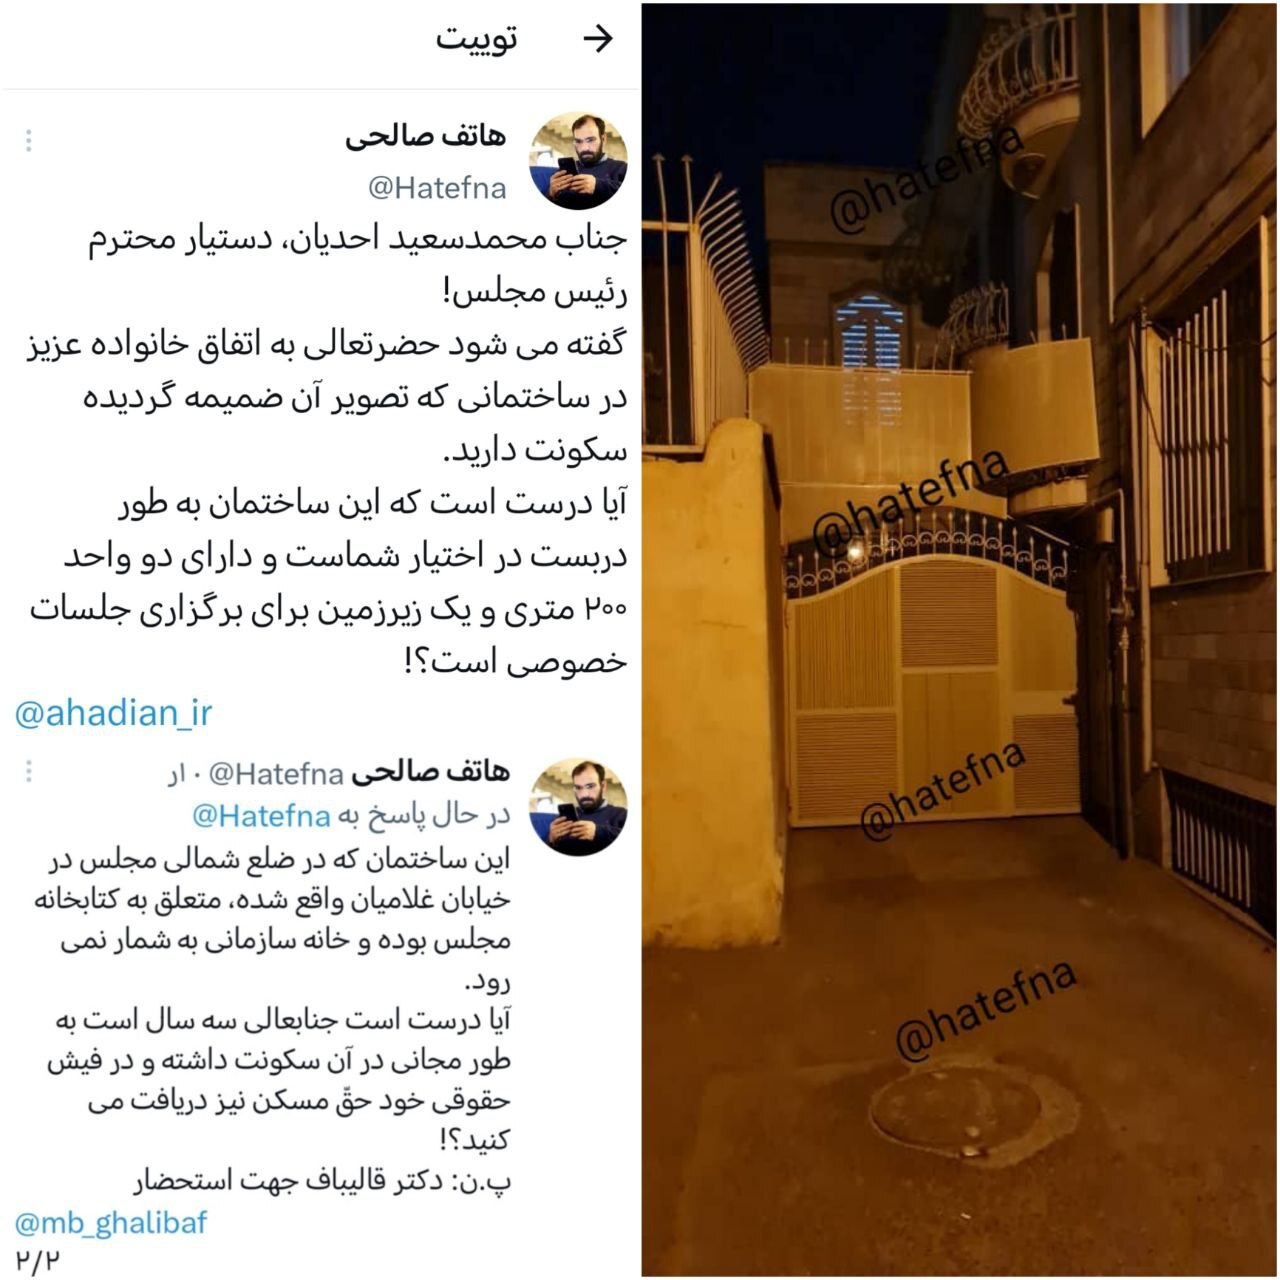 عکس / ادعای هاتف صالحی در رابطه با ساختمان محل سکونت محمدسعید احدیان، دستیار سیاسی و رسانه‌ای قالی باف!